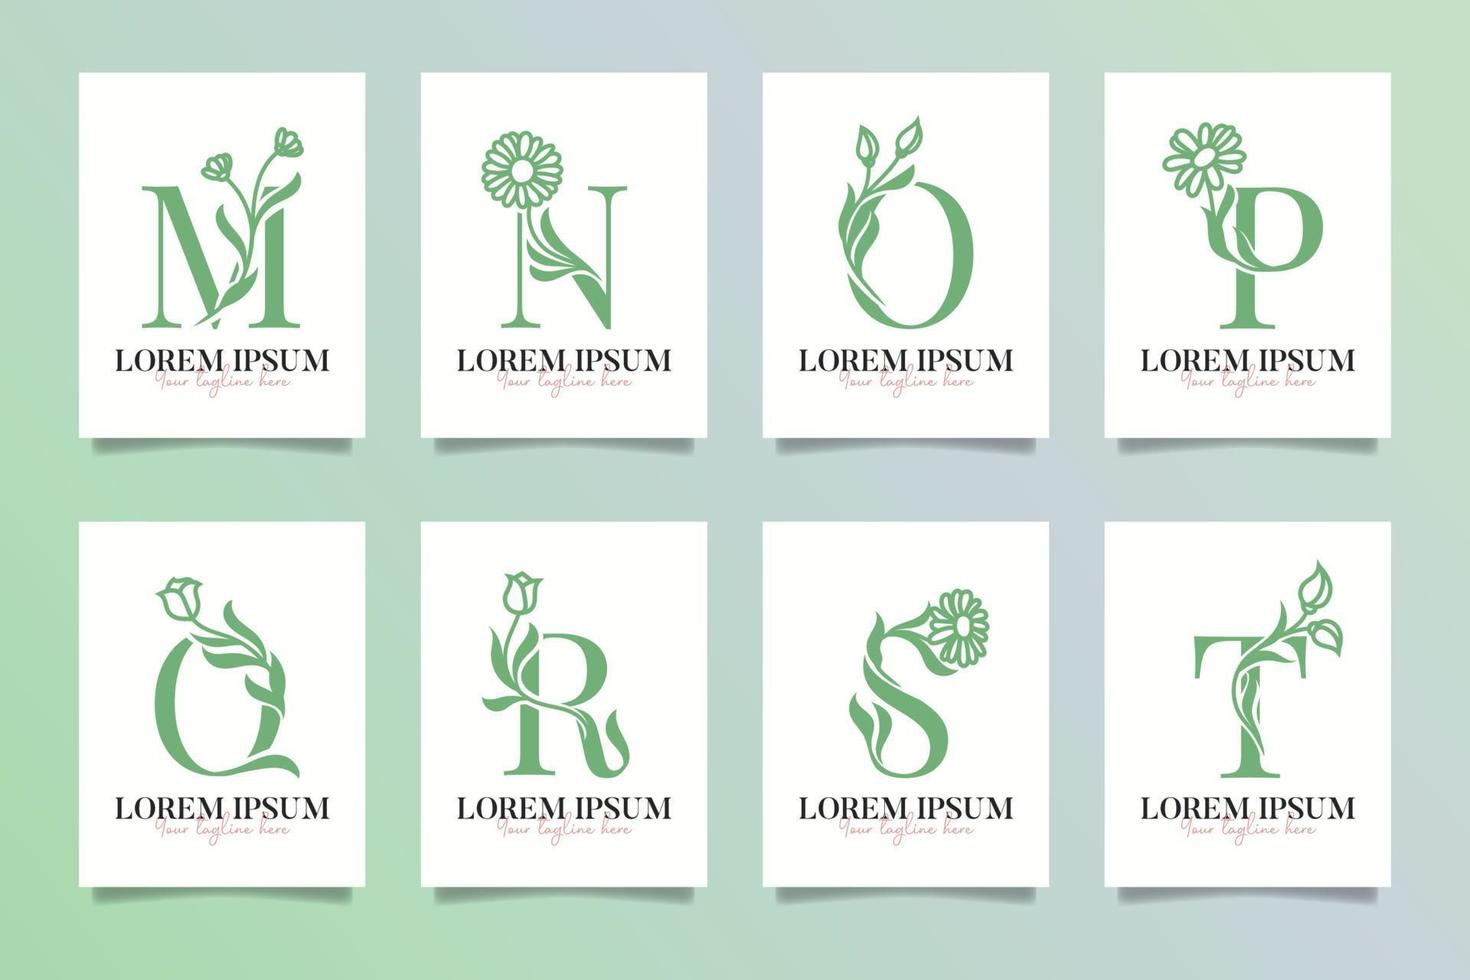 Feminim Beauty Monogram logo Letter M, N, O, P, Q, R, S and T vector